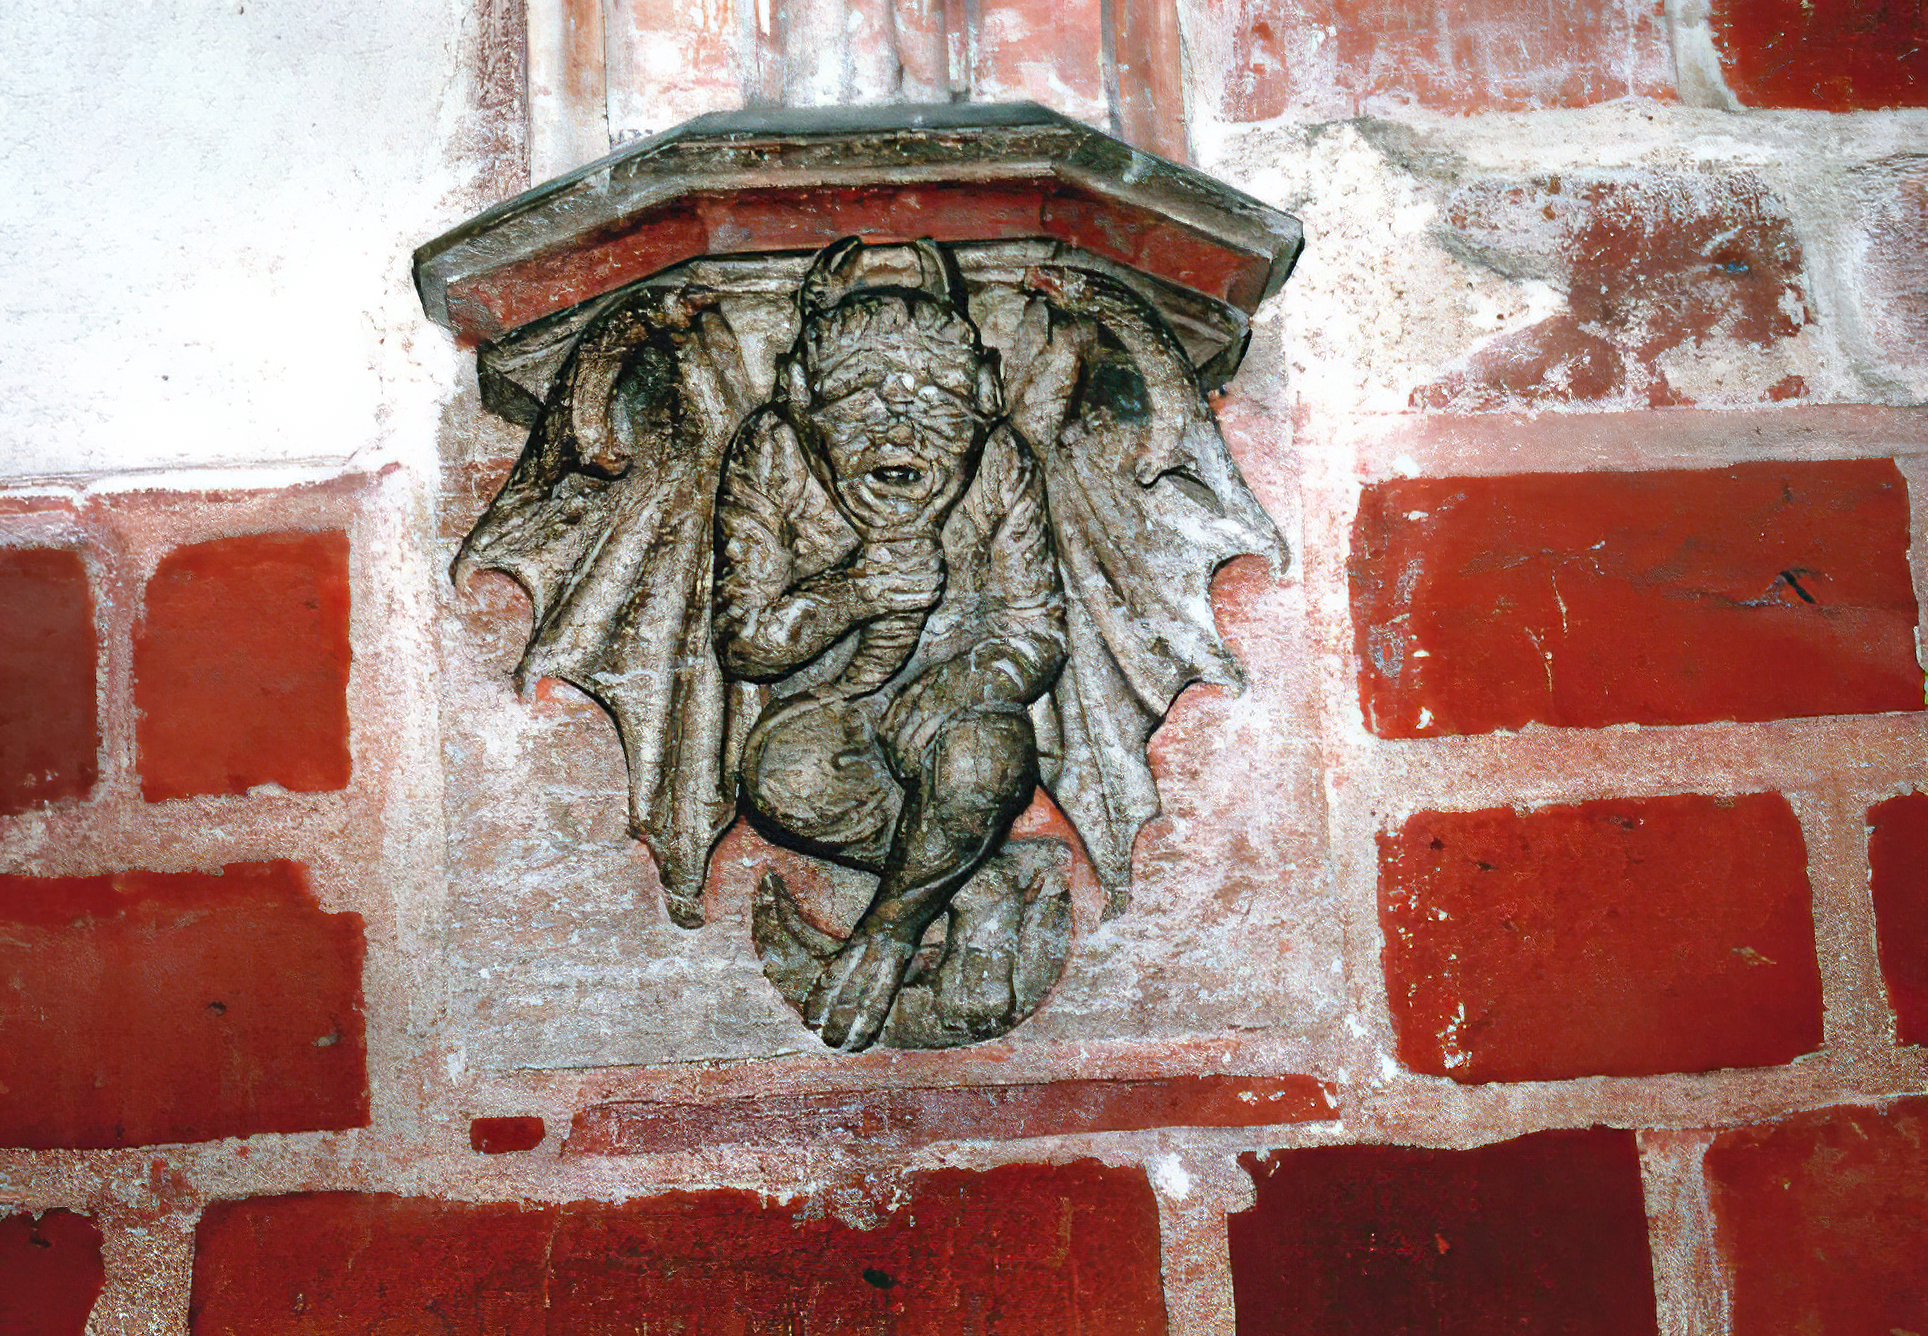 Un corbel con una escultura del diablo del castillo de Malbork, demostrada como figura C4 en mi tratado polaco [4B] y también como figura N5 en mi monografía [1/4].